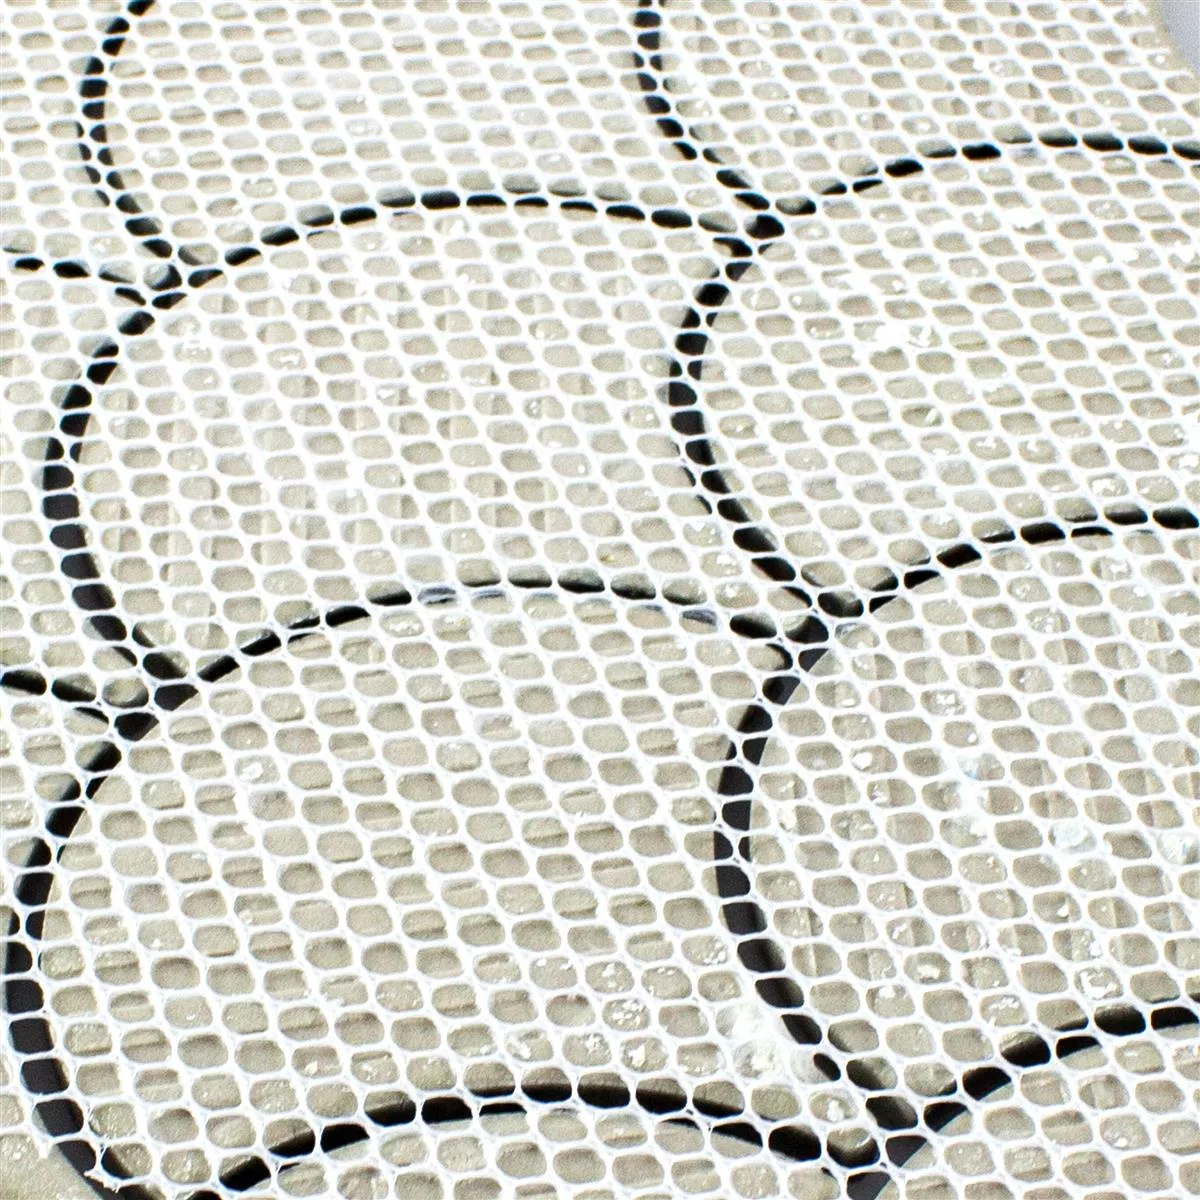 Sample Ceramic Mosaic Tiles Dolores Stone Optic Calacatta